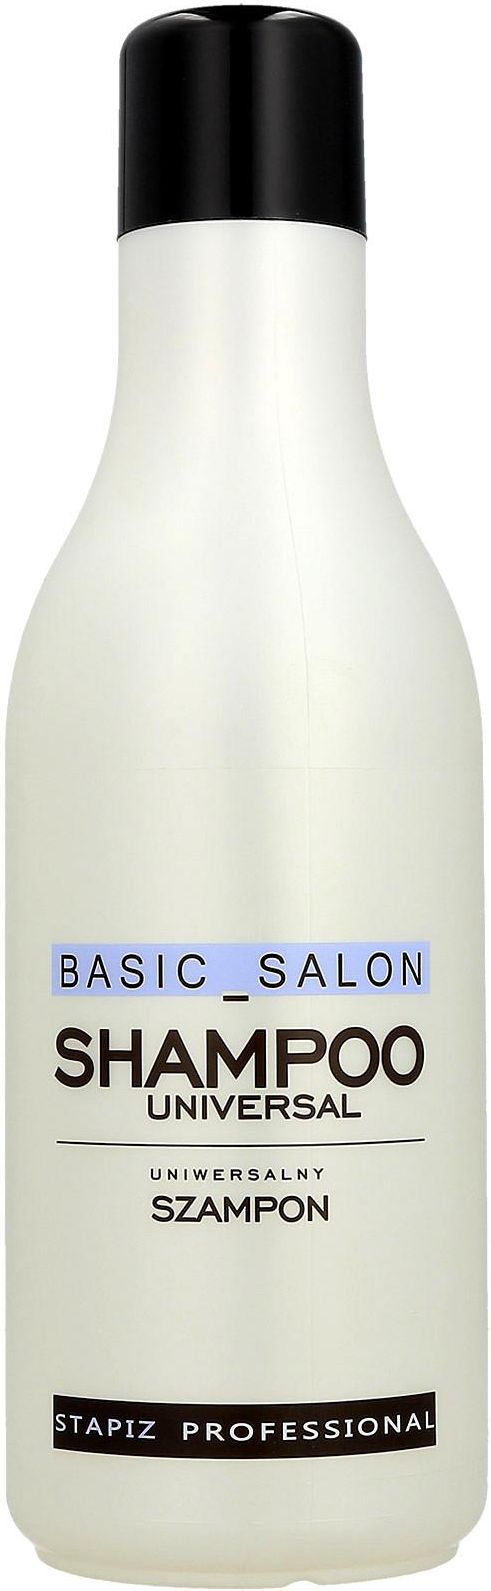 szampon do włosów basic salon universal